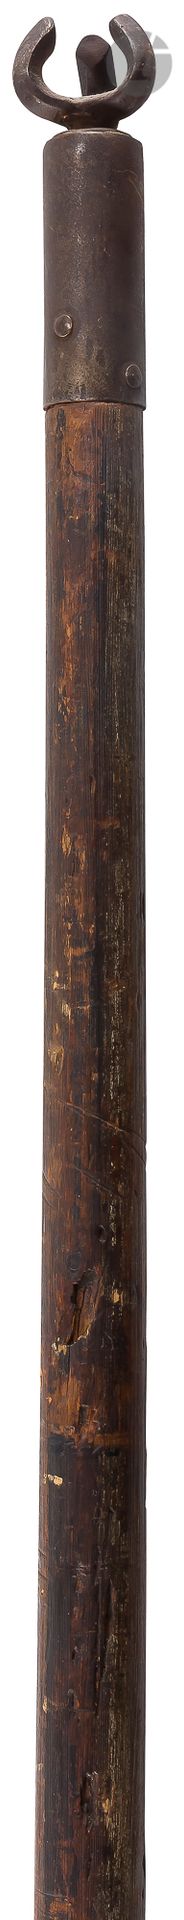 Null Lanza de justa al estilo del siglo XV

Fabricado en madera torneada. Gancho&hellip;